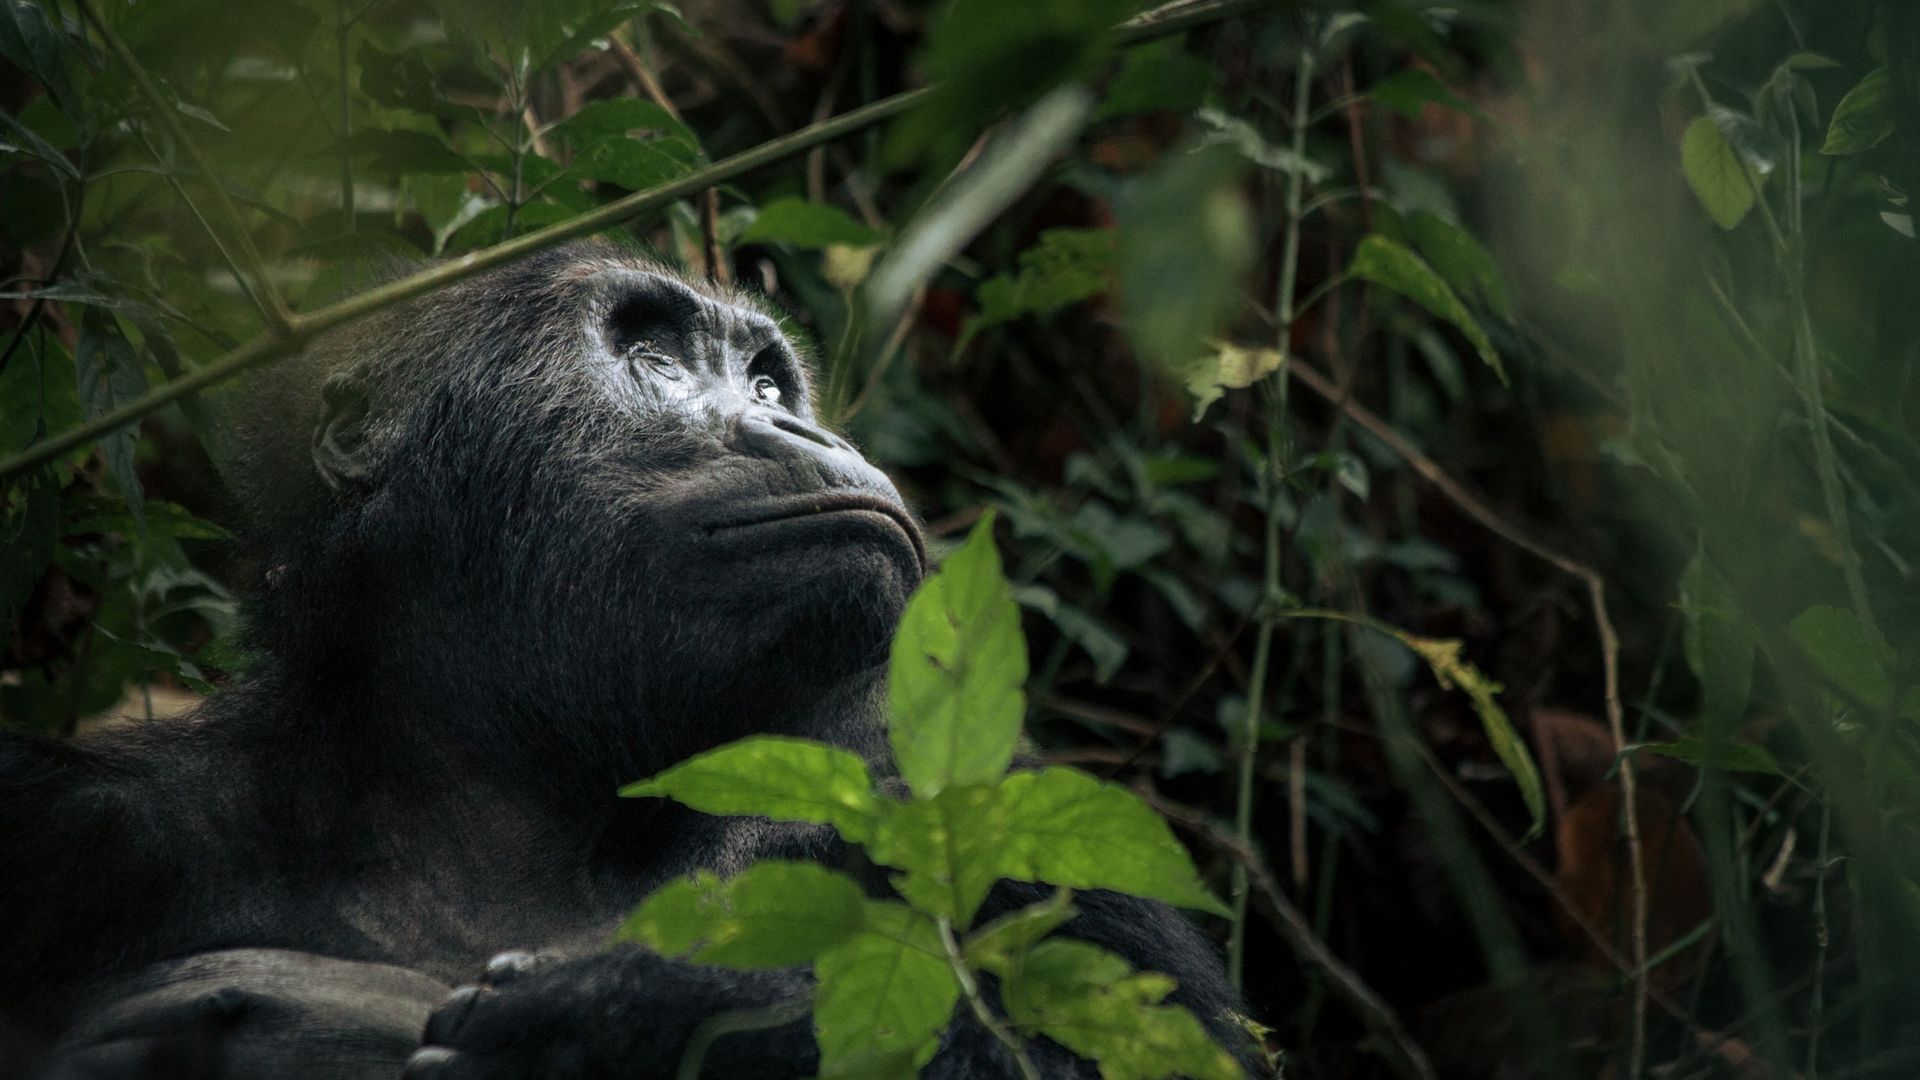 Les gorilles de Grauer en danger critique d’extinction, font l’objet de mesures de conservation dans la réserve de Nkuba en RDC